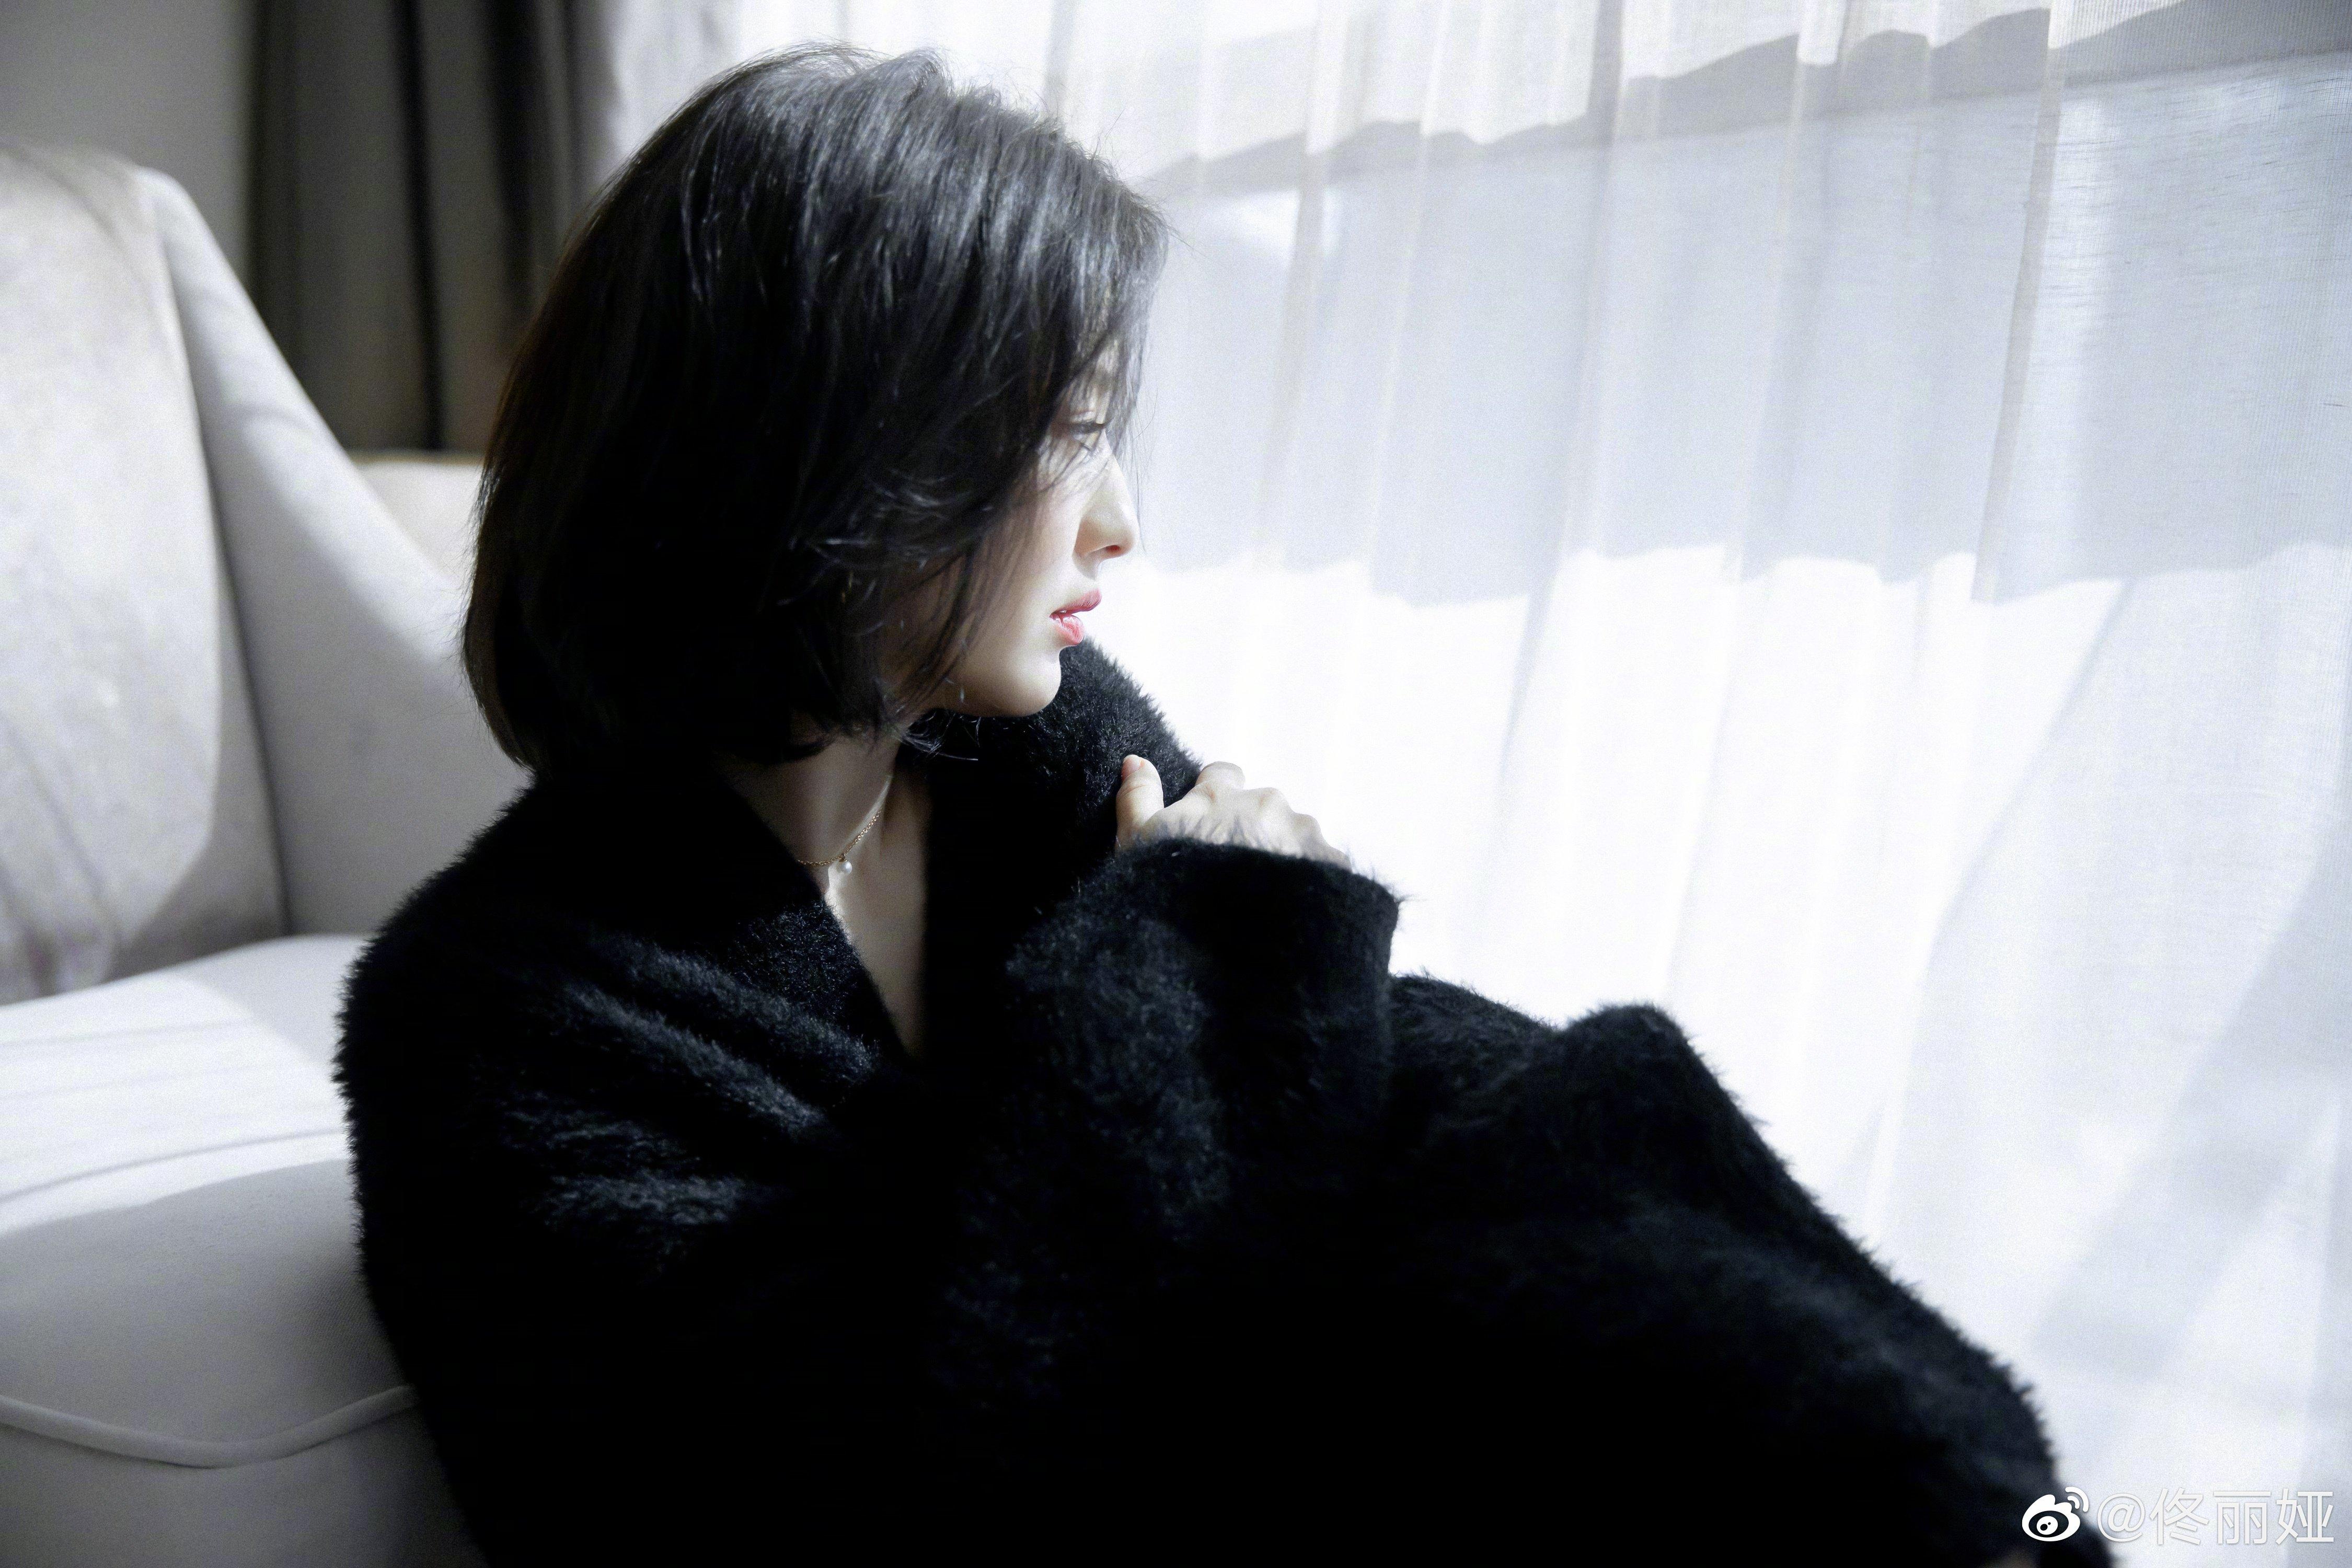 佟丽娅短发造型拍写真温婉清冷 穿黑色居家服露香肩锁骨,1 (1)